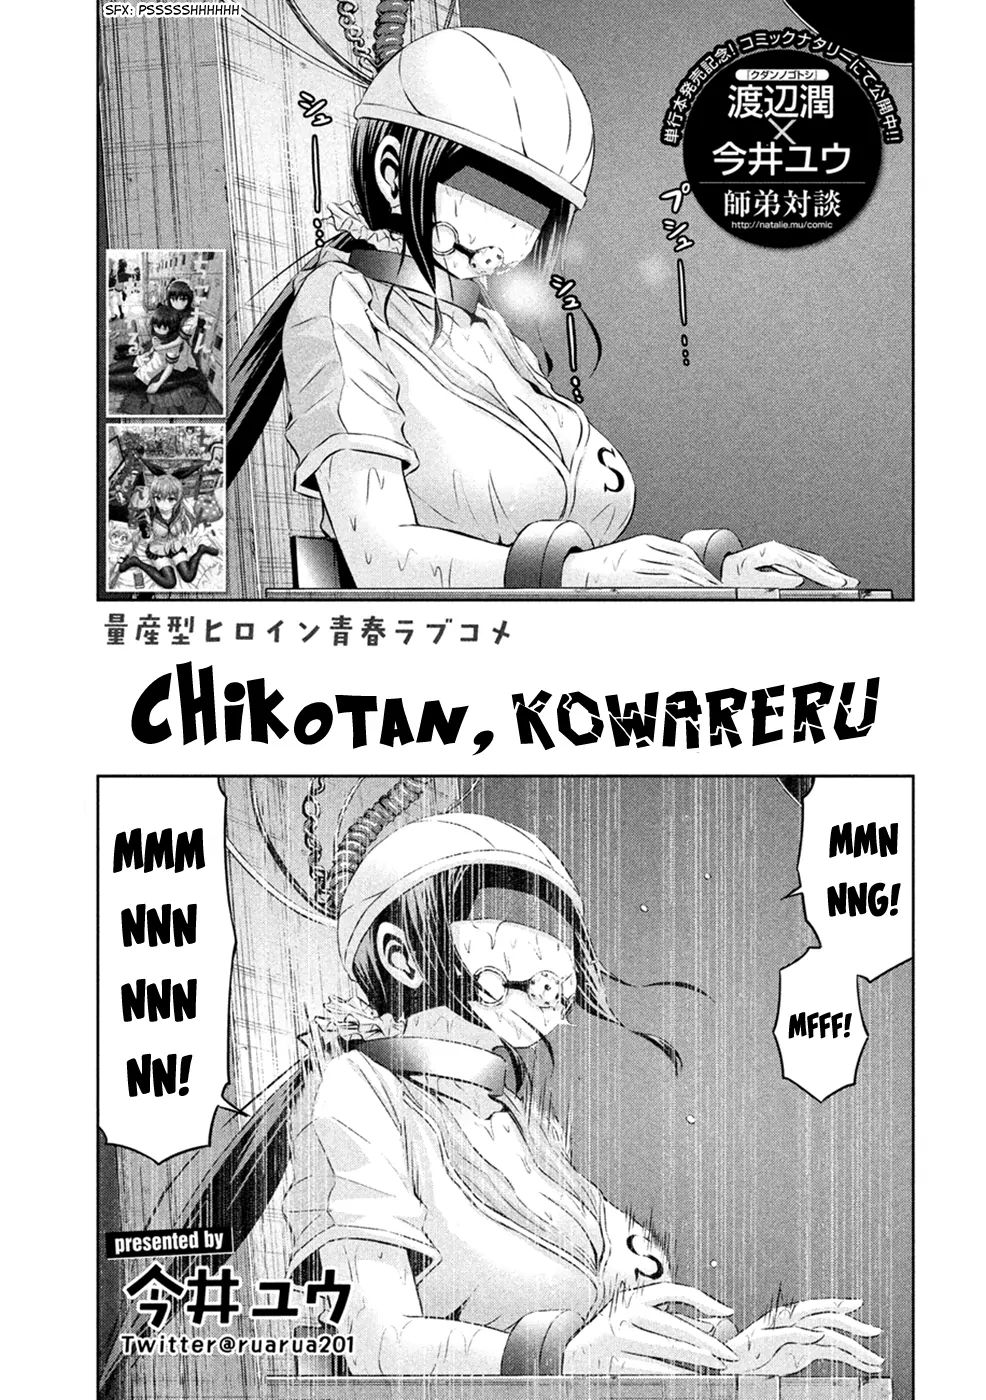 Chikotan, Kowareru - Page 2